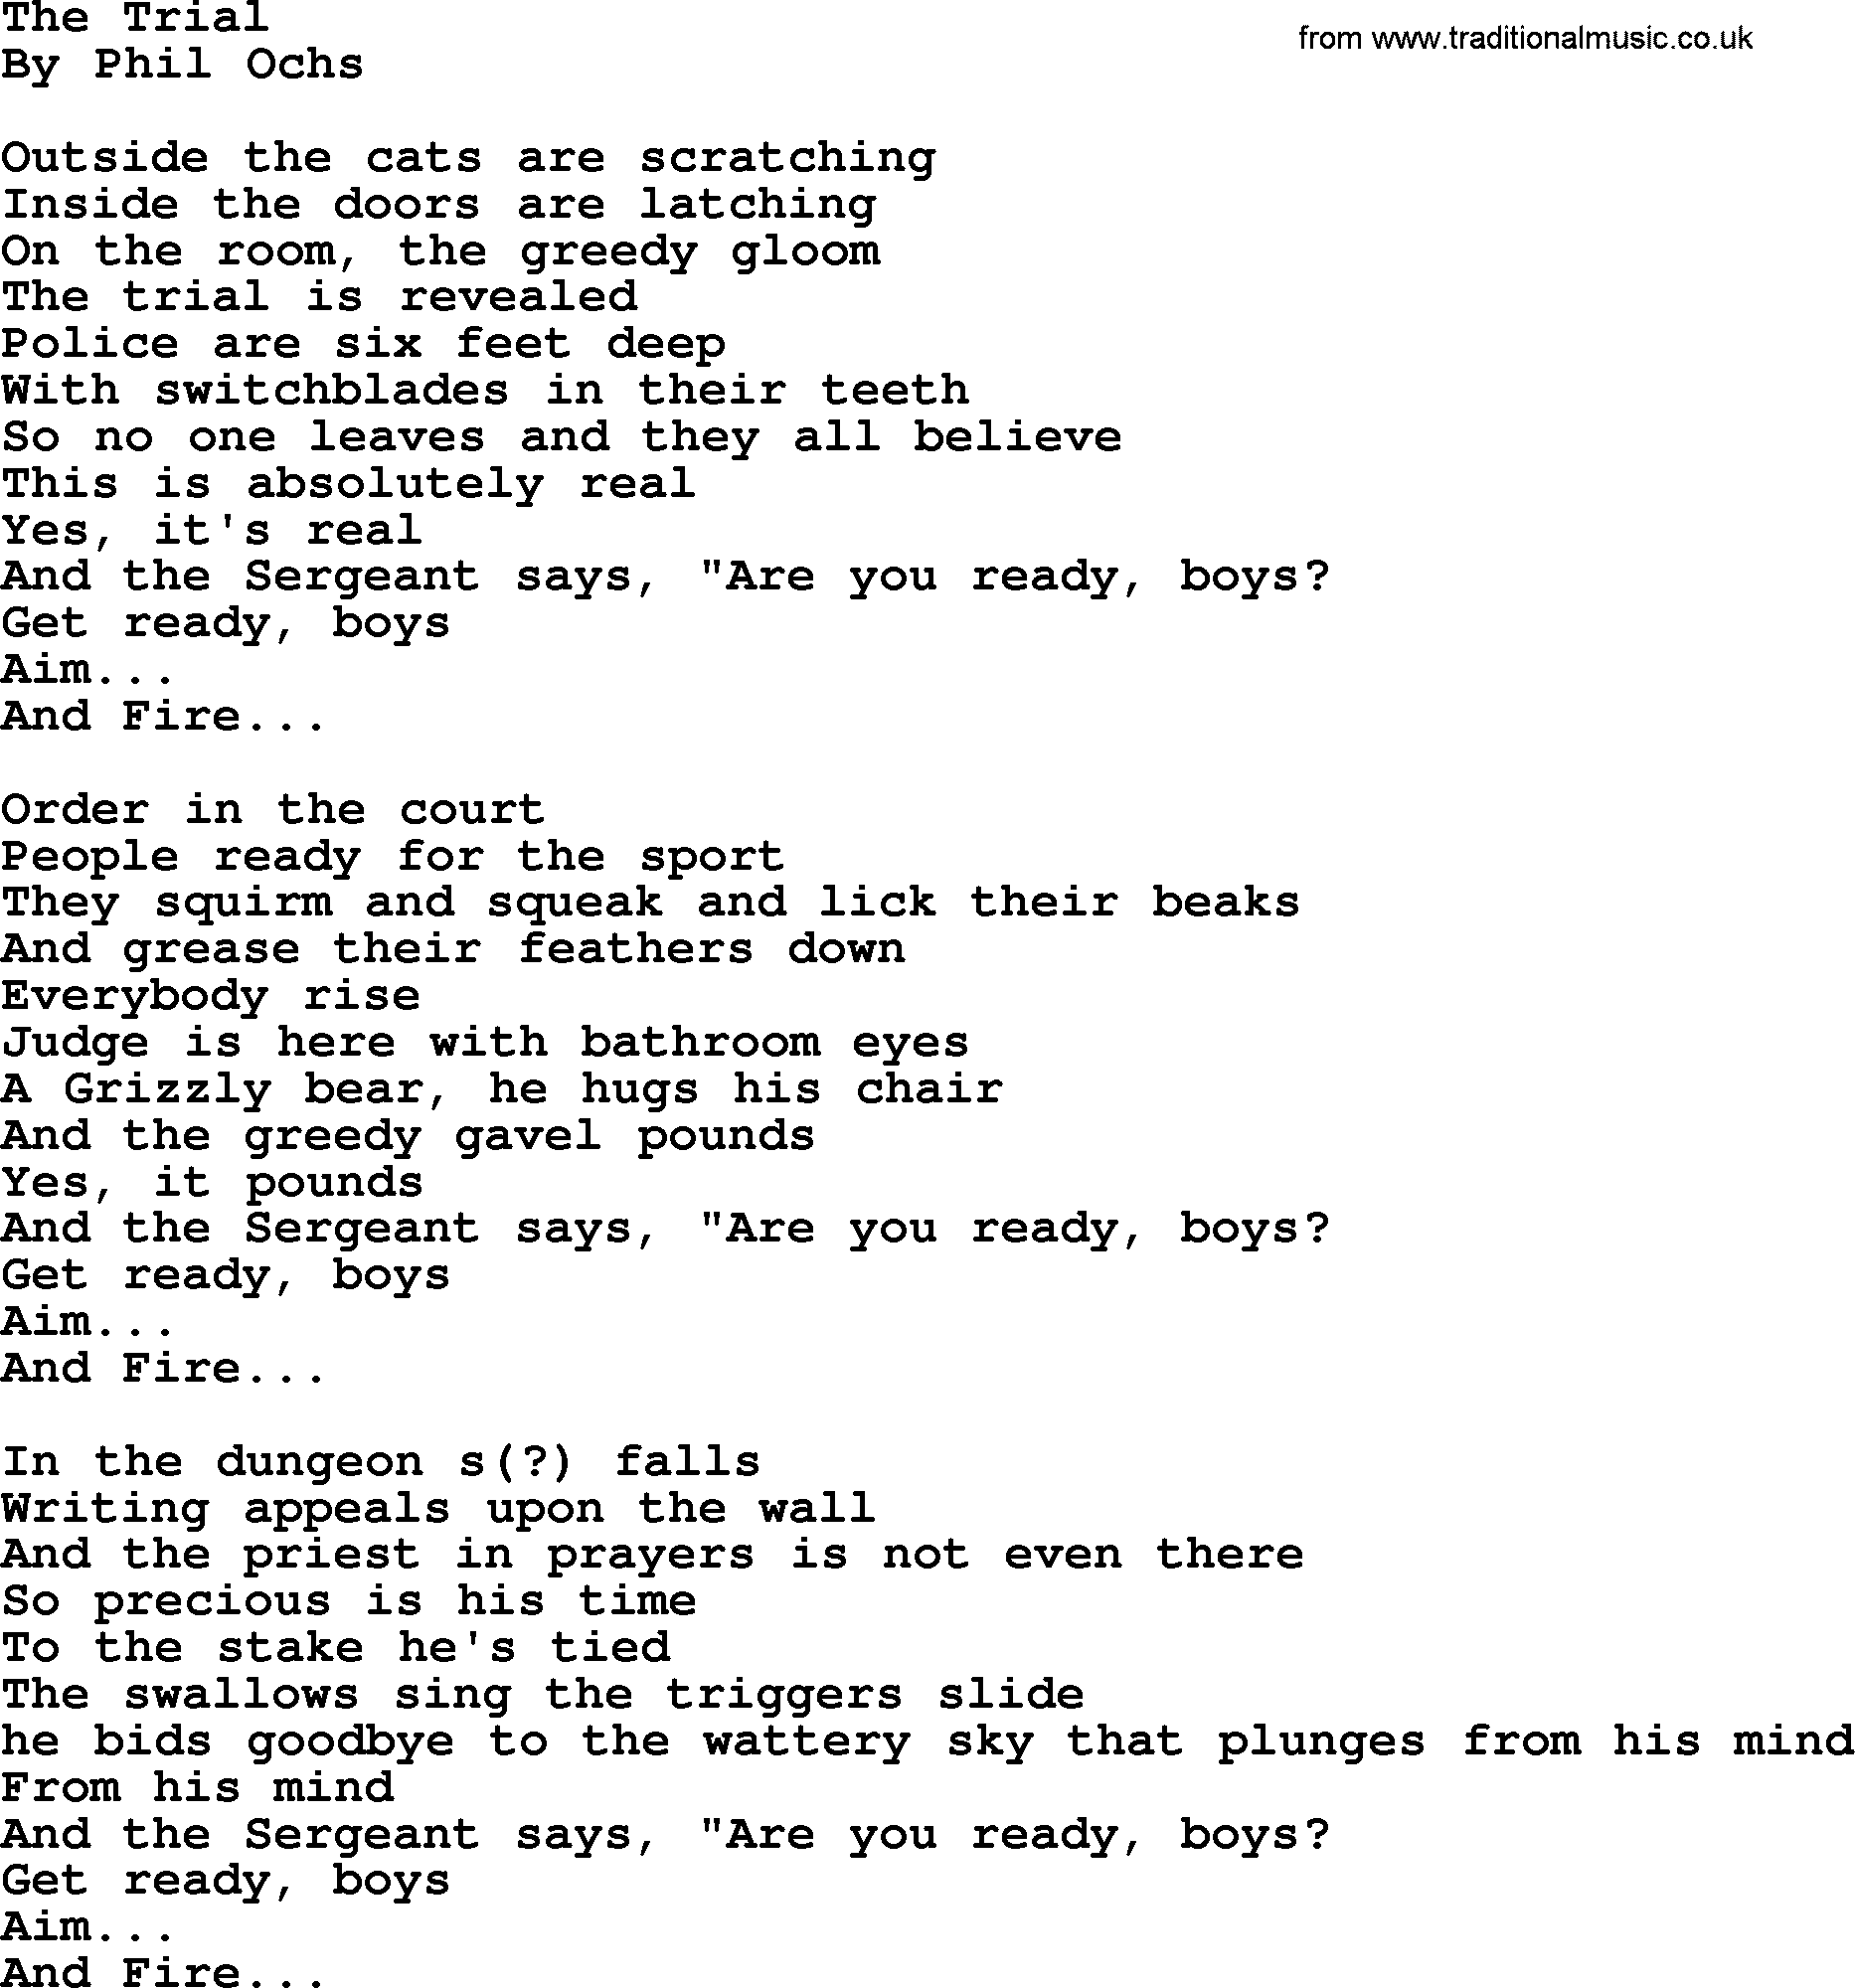 Phil Ochs song The Trial, lyrics